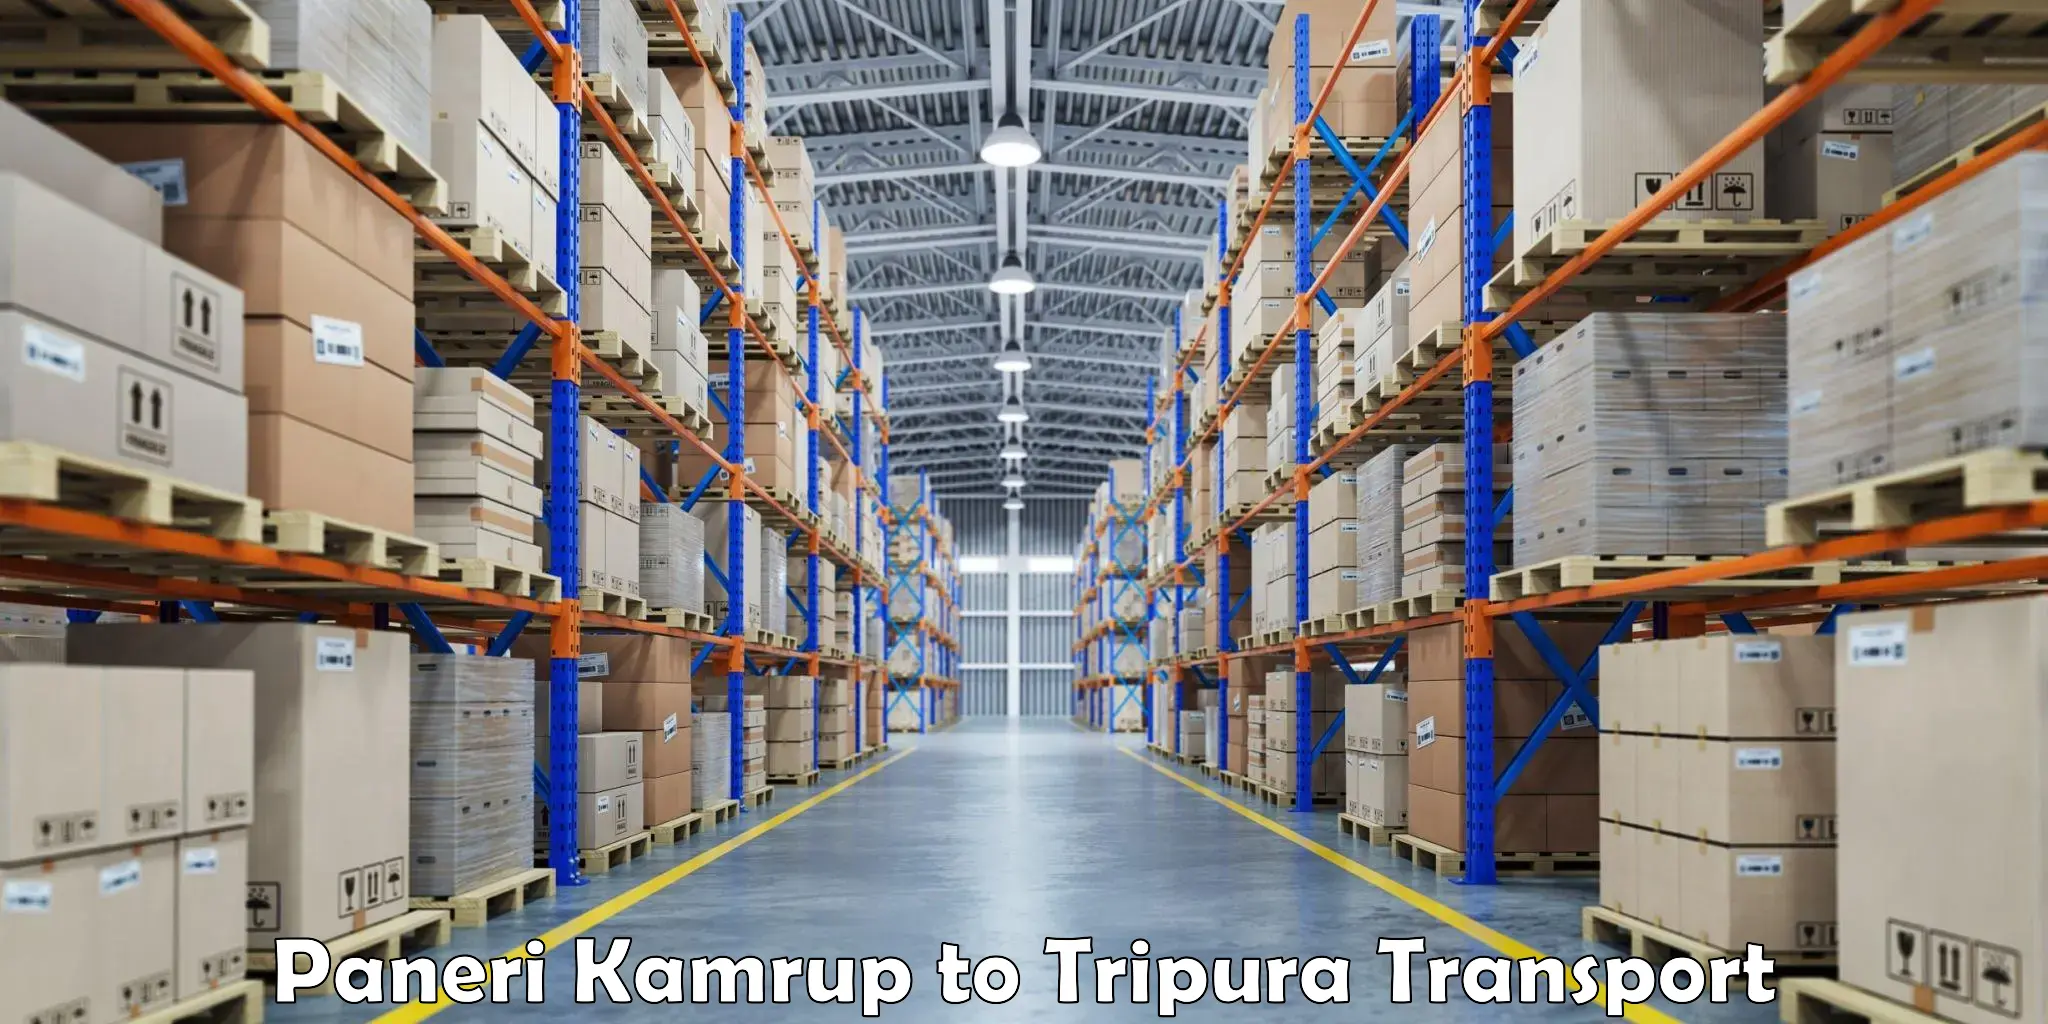 Express transport services Paneri Kamrup to Udaipur Tripura